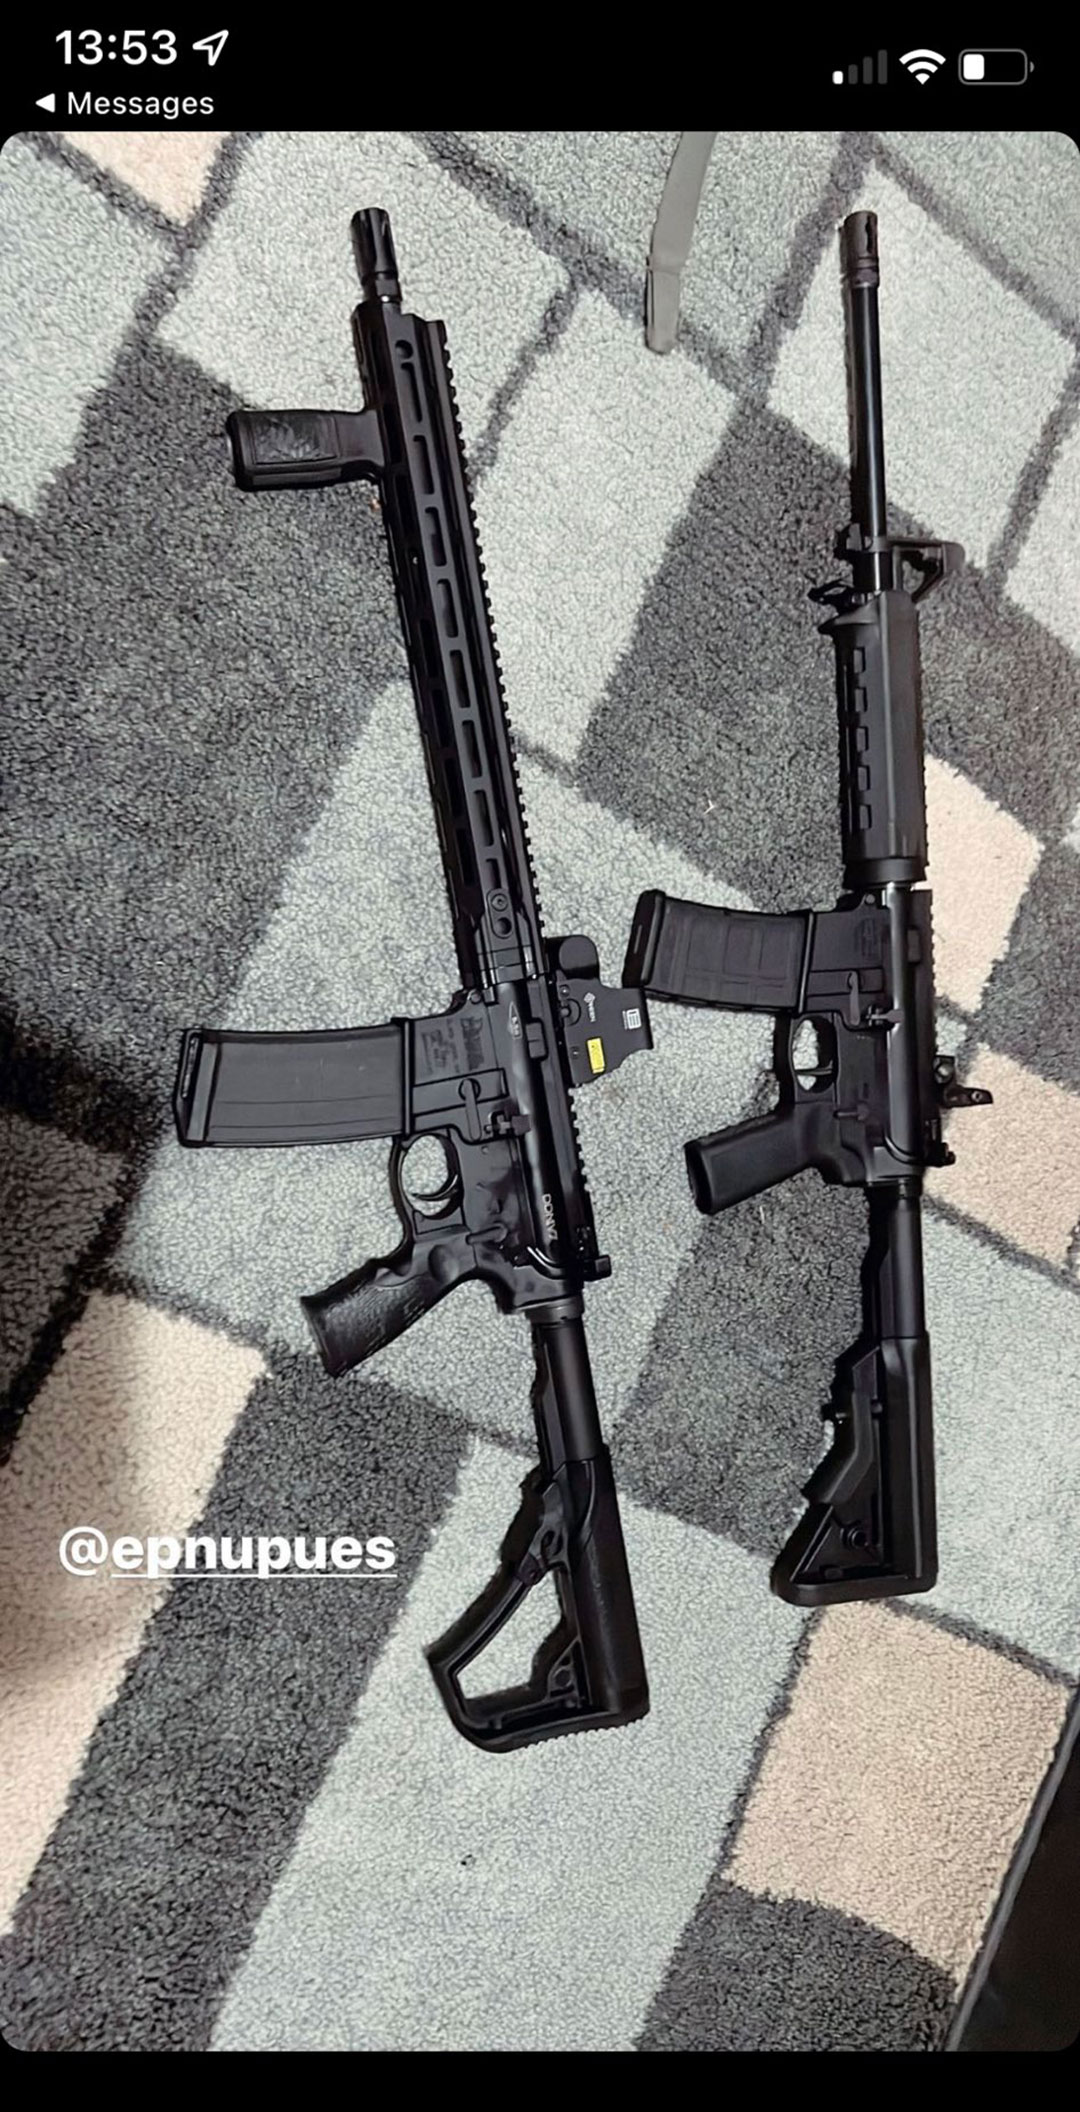 Ramos había publicado imágenes de los rifles que había comprado en redes sociales